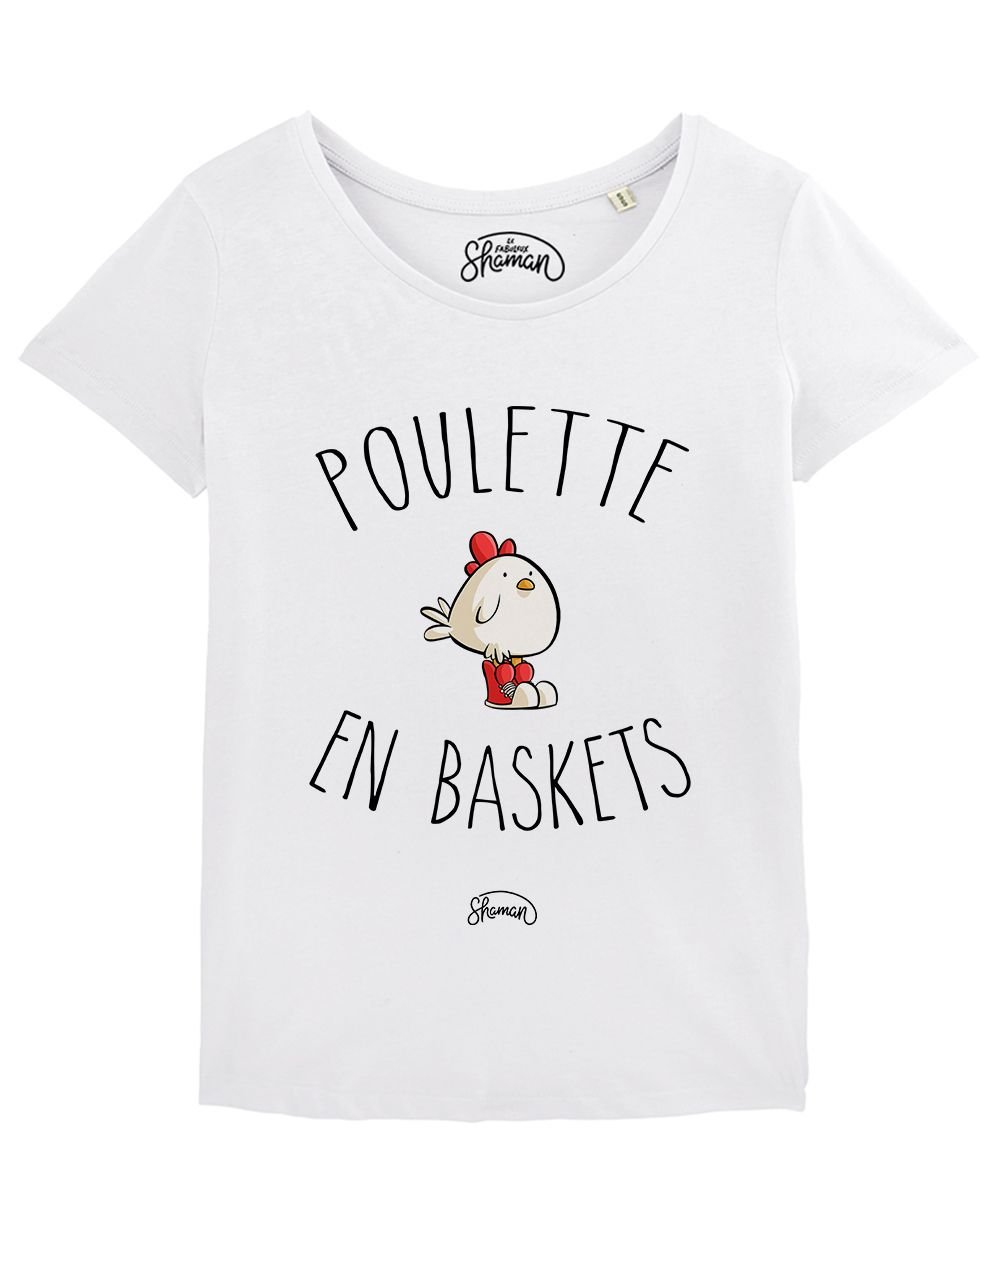 T-shirt "Poulette en baskets"